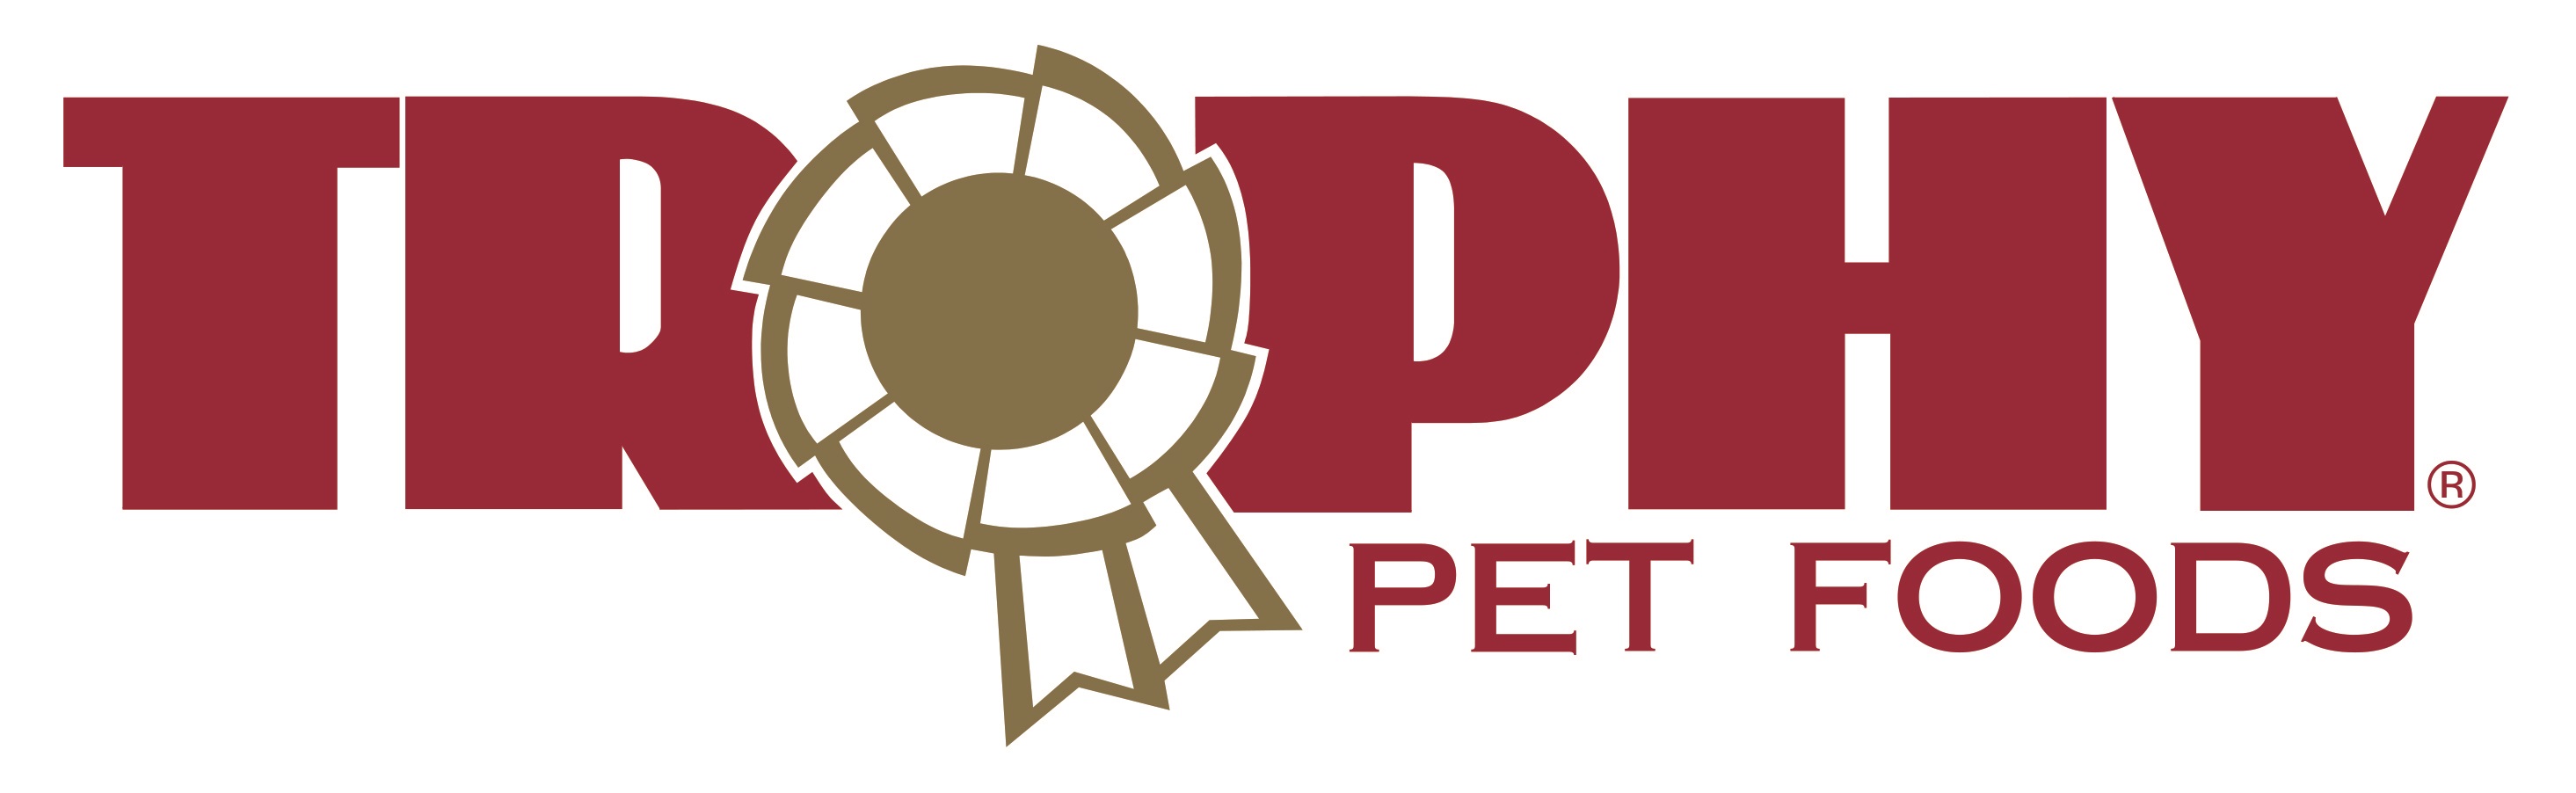 Trophy Pet Foods Franchise Logo 